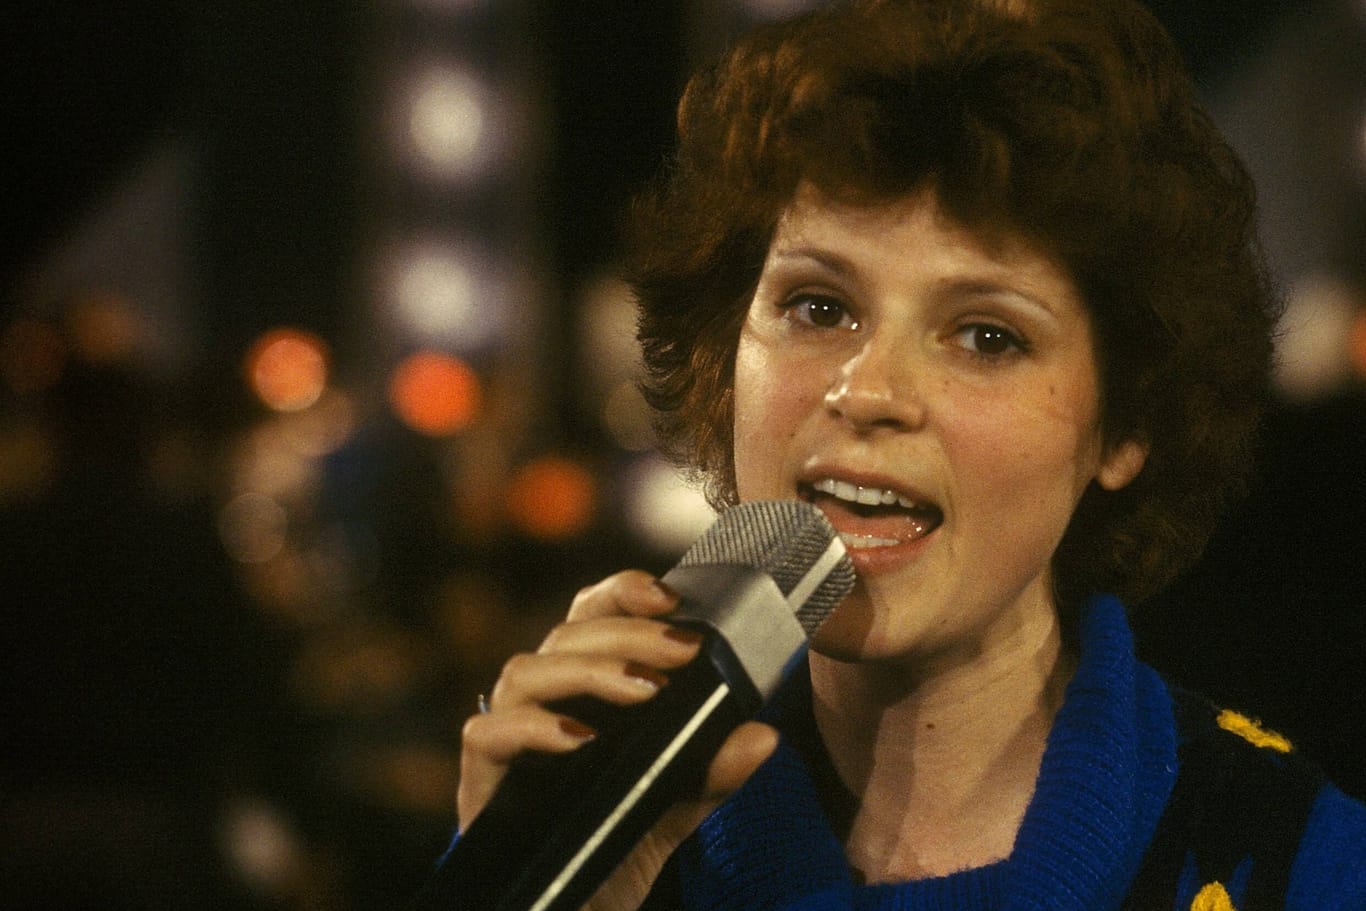 Gaby Rückert bei einem Auftritt im Jahr 1978.